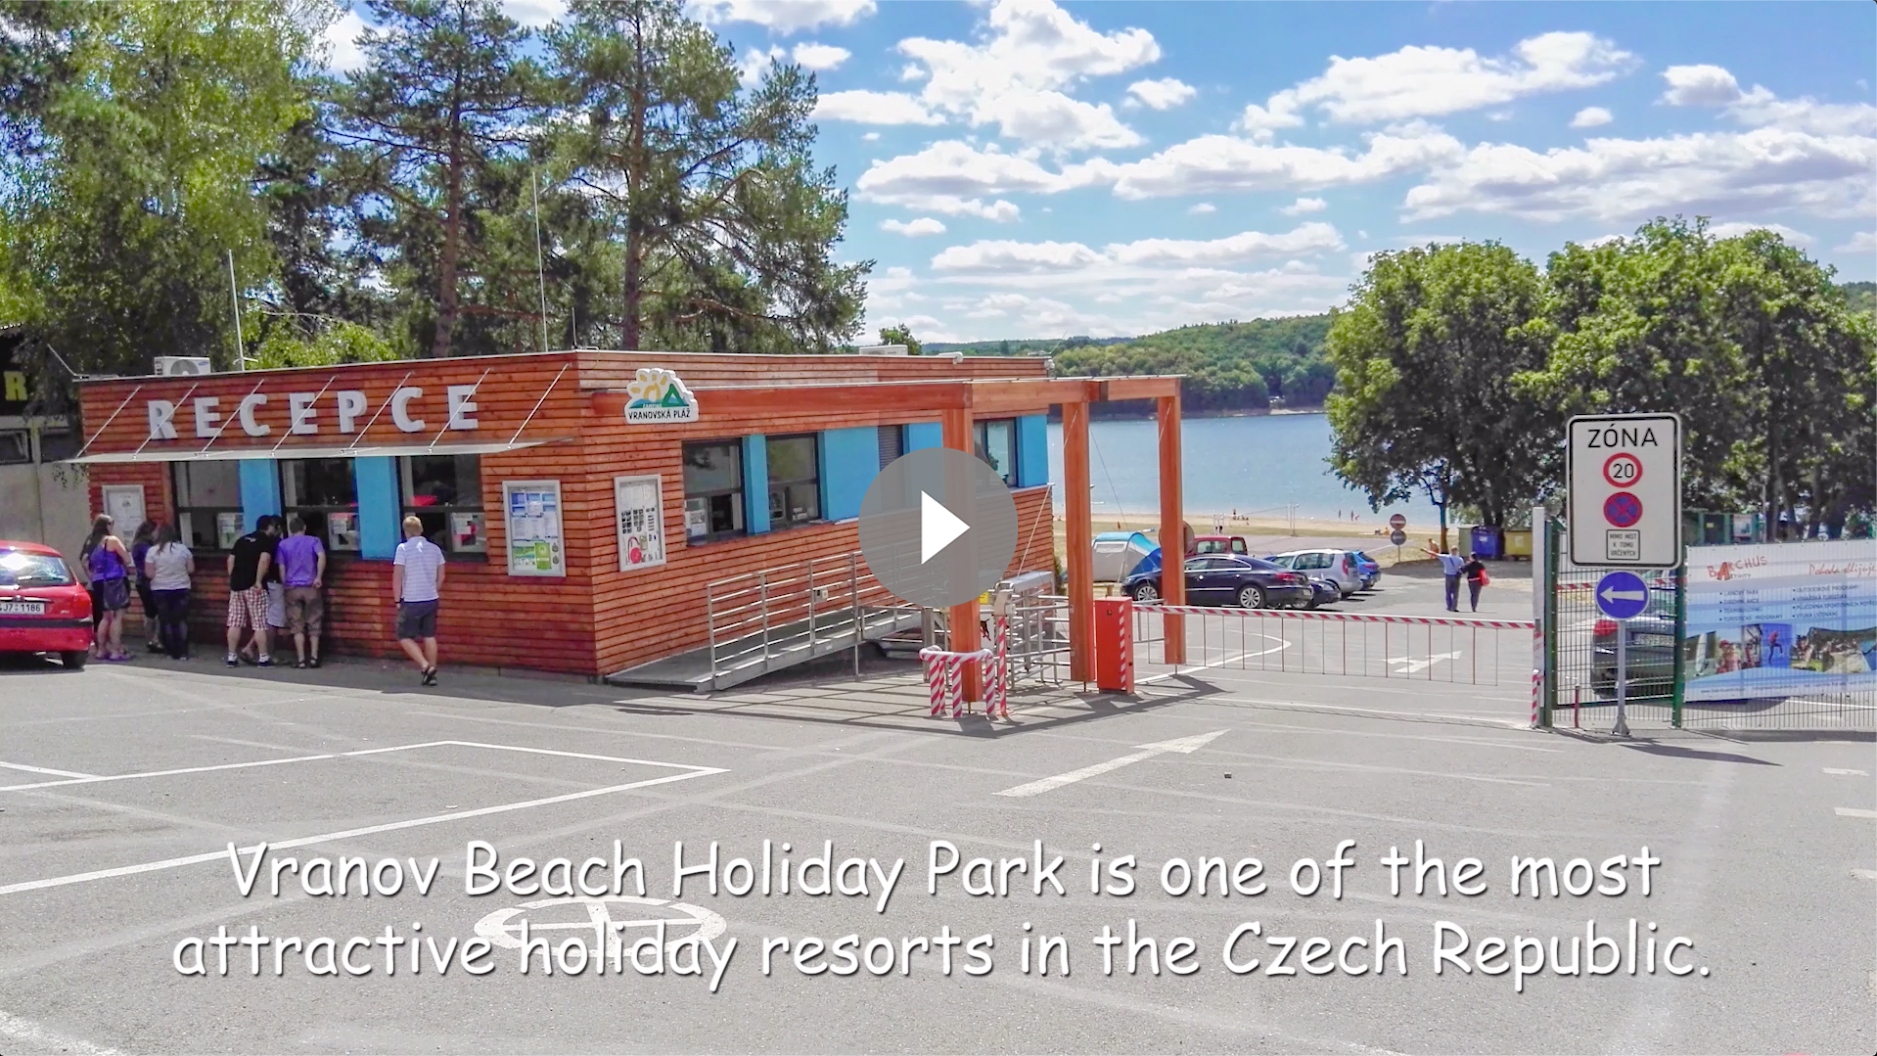 Vranov Beach Holiday Park